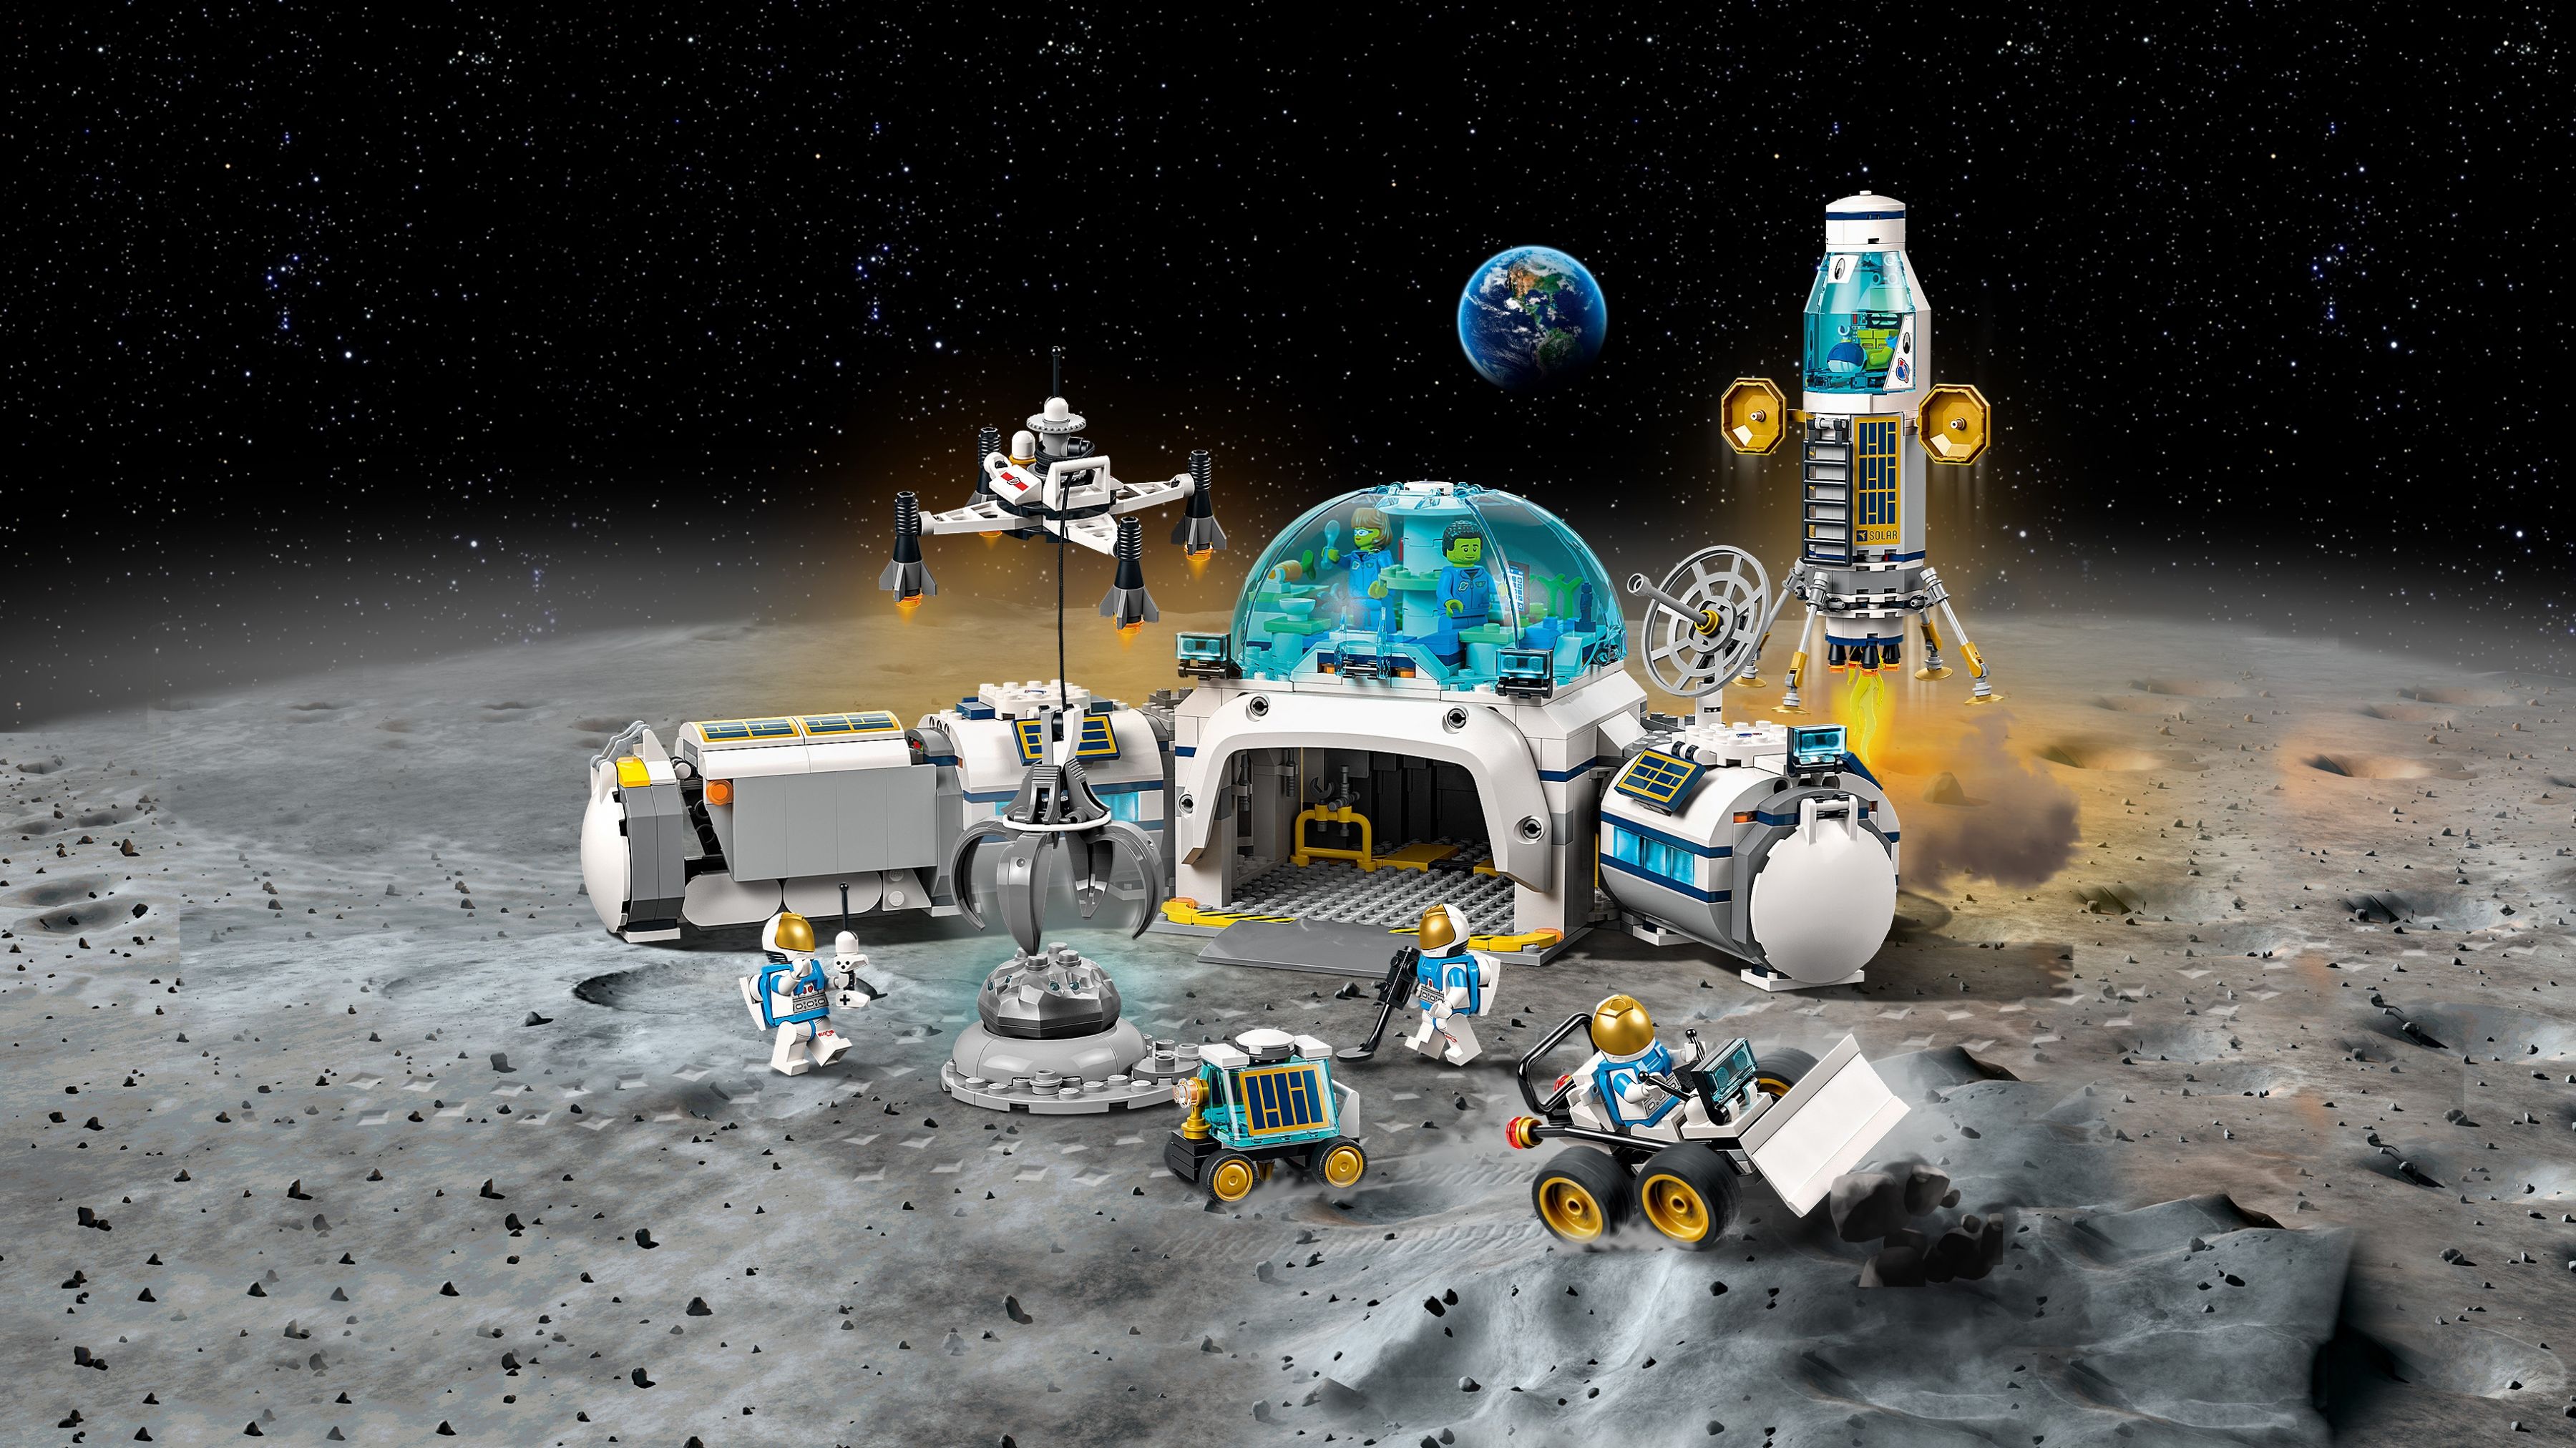 LEGO City 2022 Neuheiten: Erste Bilder zu Krankenhaus, Mondbasis und mehr!